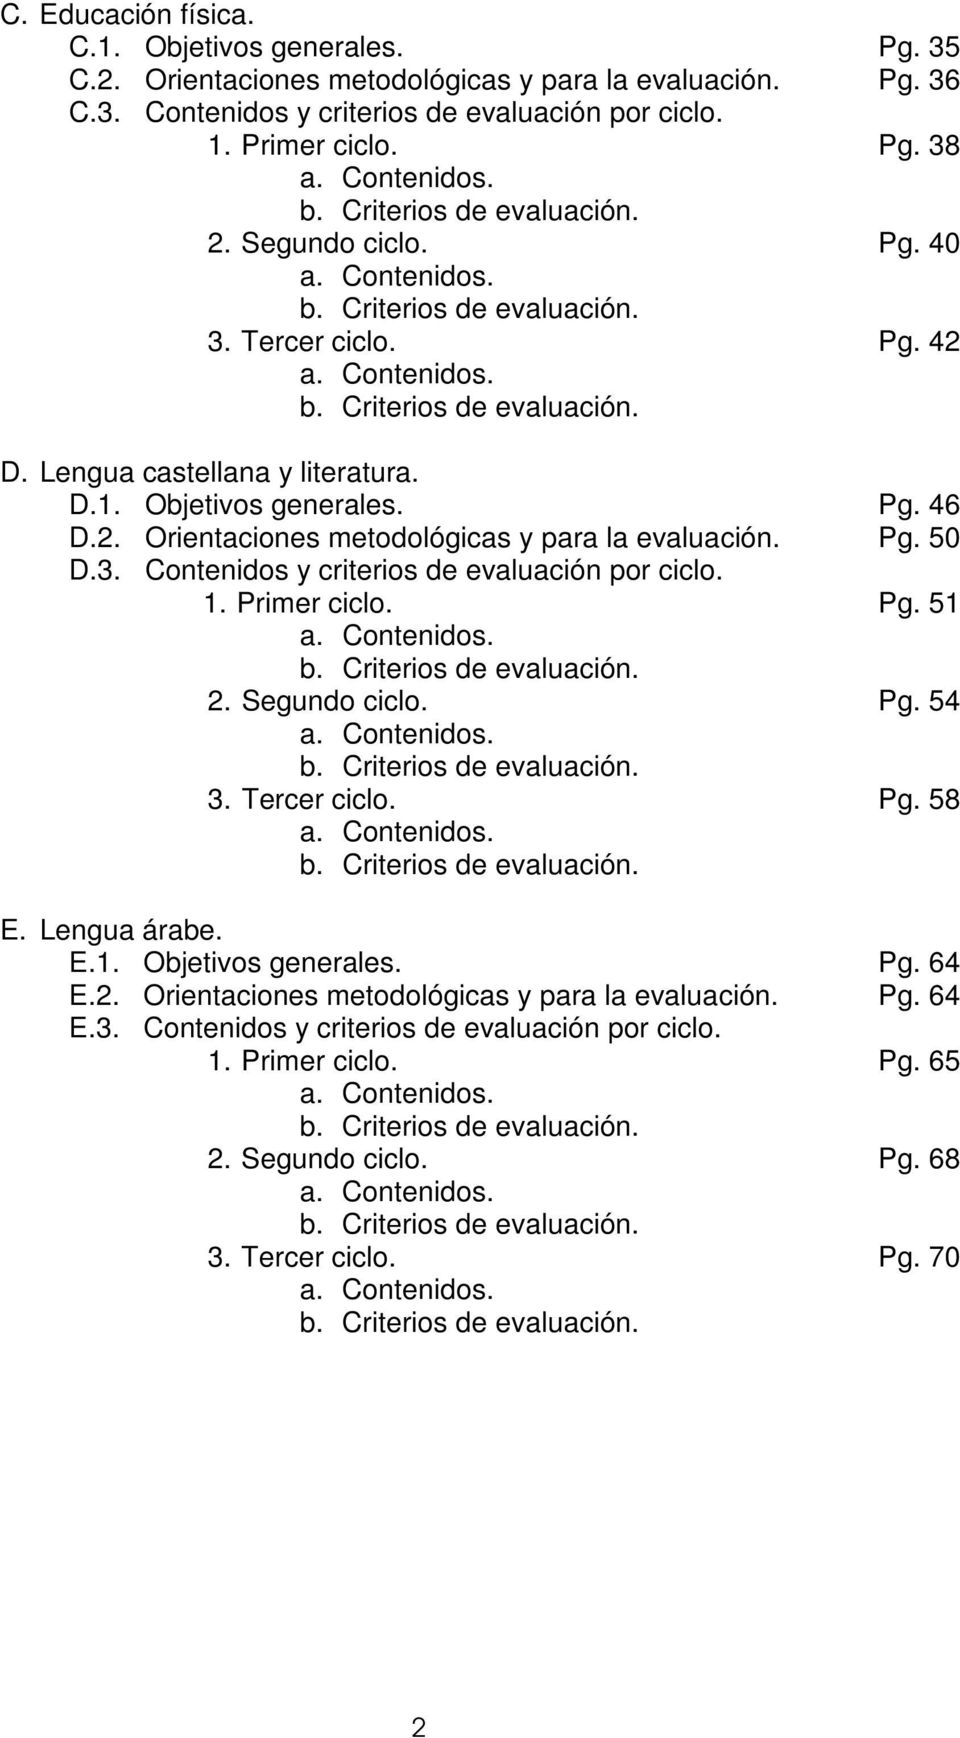 Lengua castellana y literatura. D.1. Objetivos generales. Pg. 46 D.2. Orientaciones metodológicas y para la evaluación. Pg. 50 D.3. Contenidos y criterios de evaluación por ciclo. 1. Primer ciclo. Pg. 51 a.